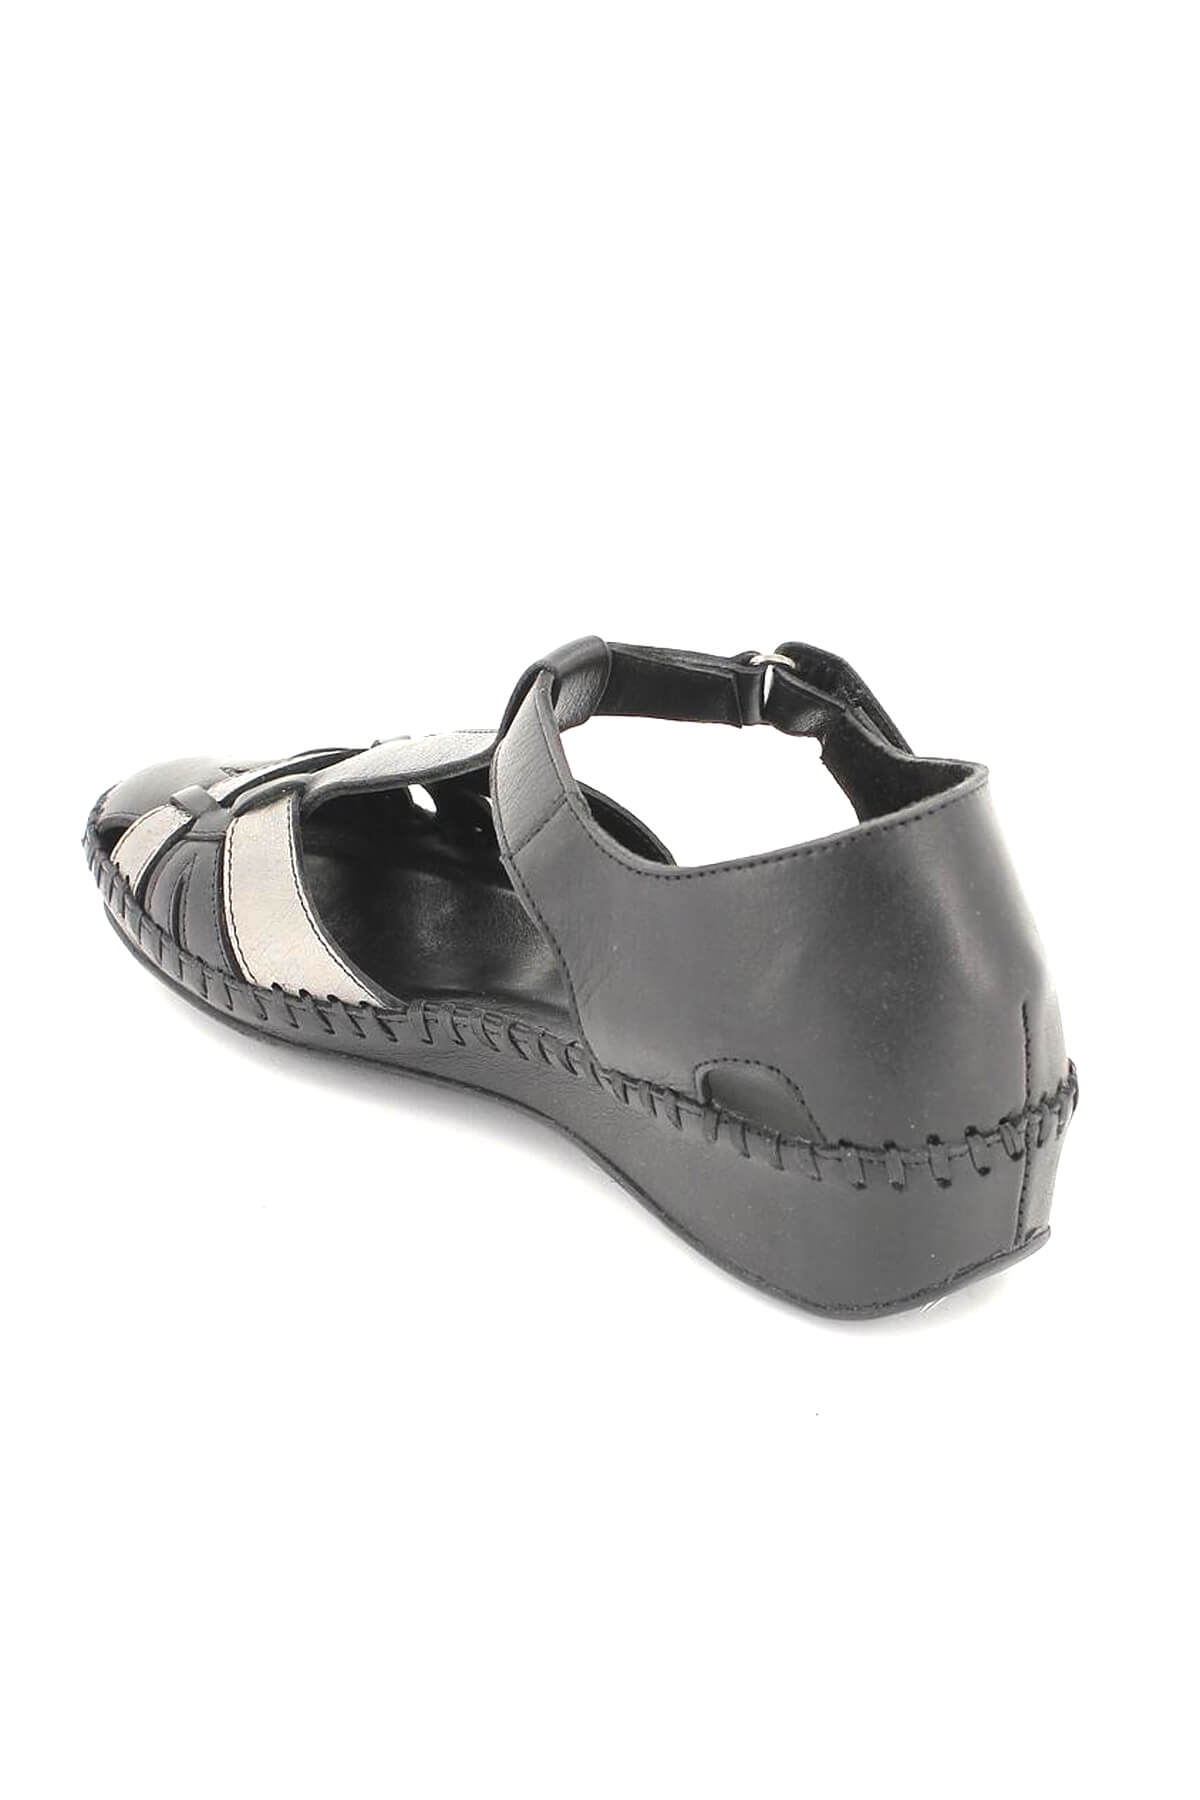 Kadın Comfort Deri Ayakkabı Siyah 18793008